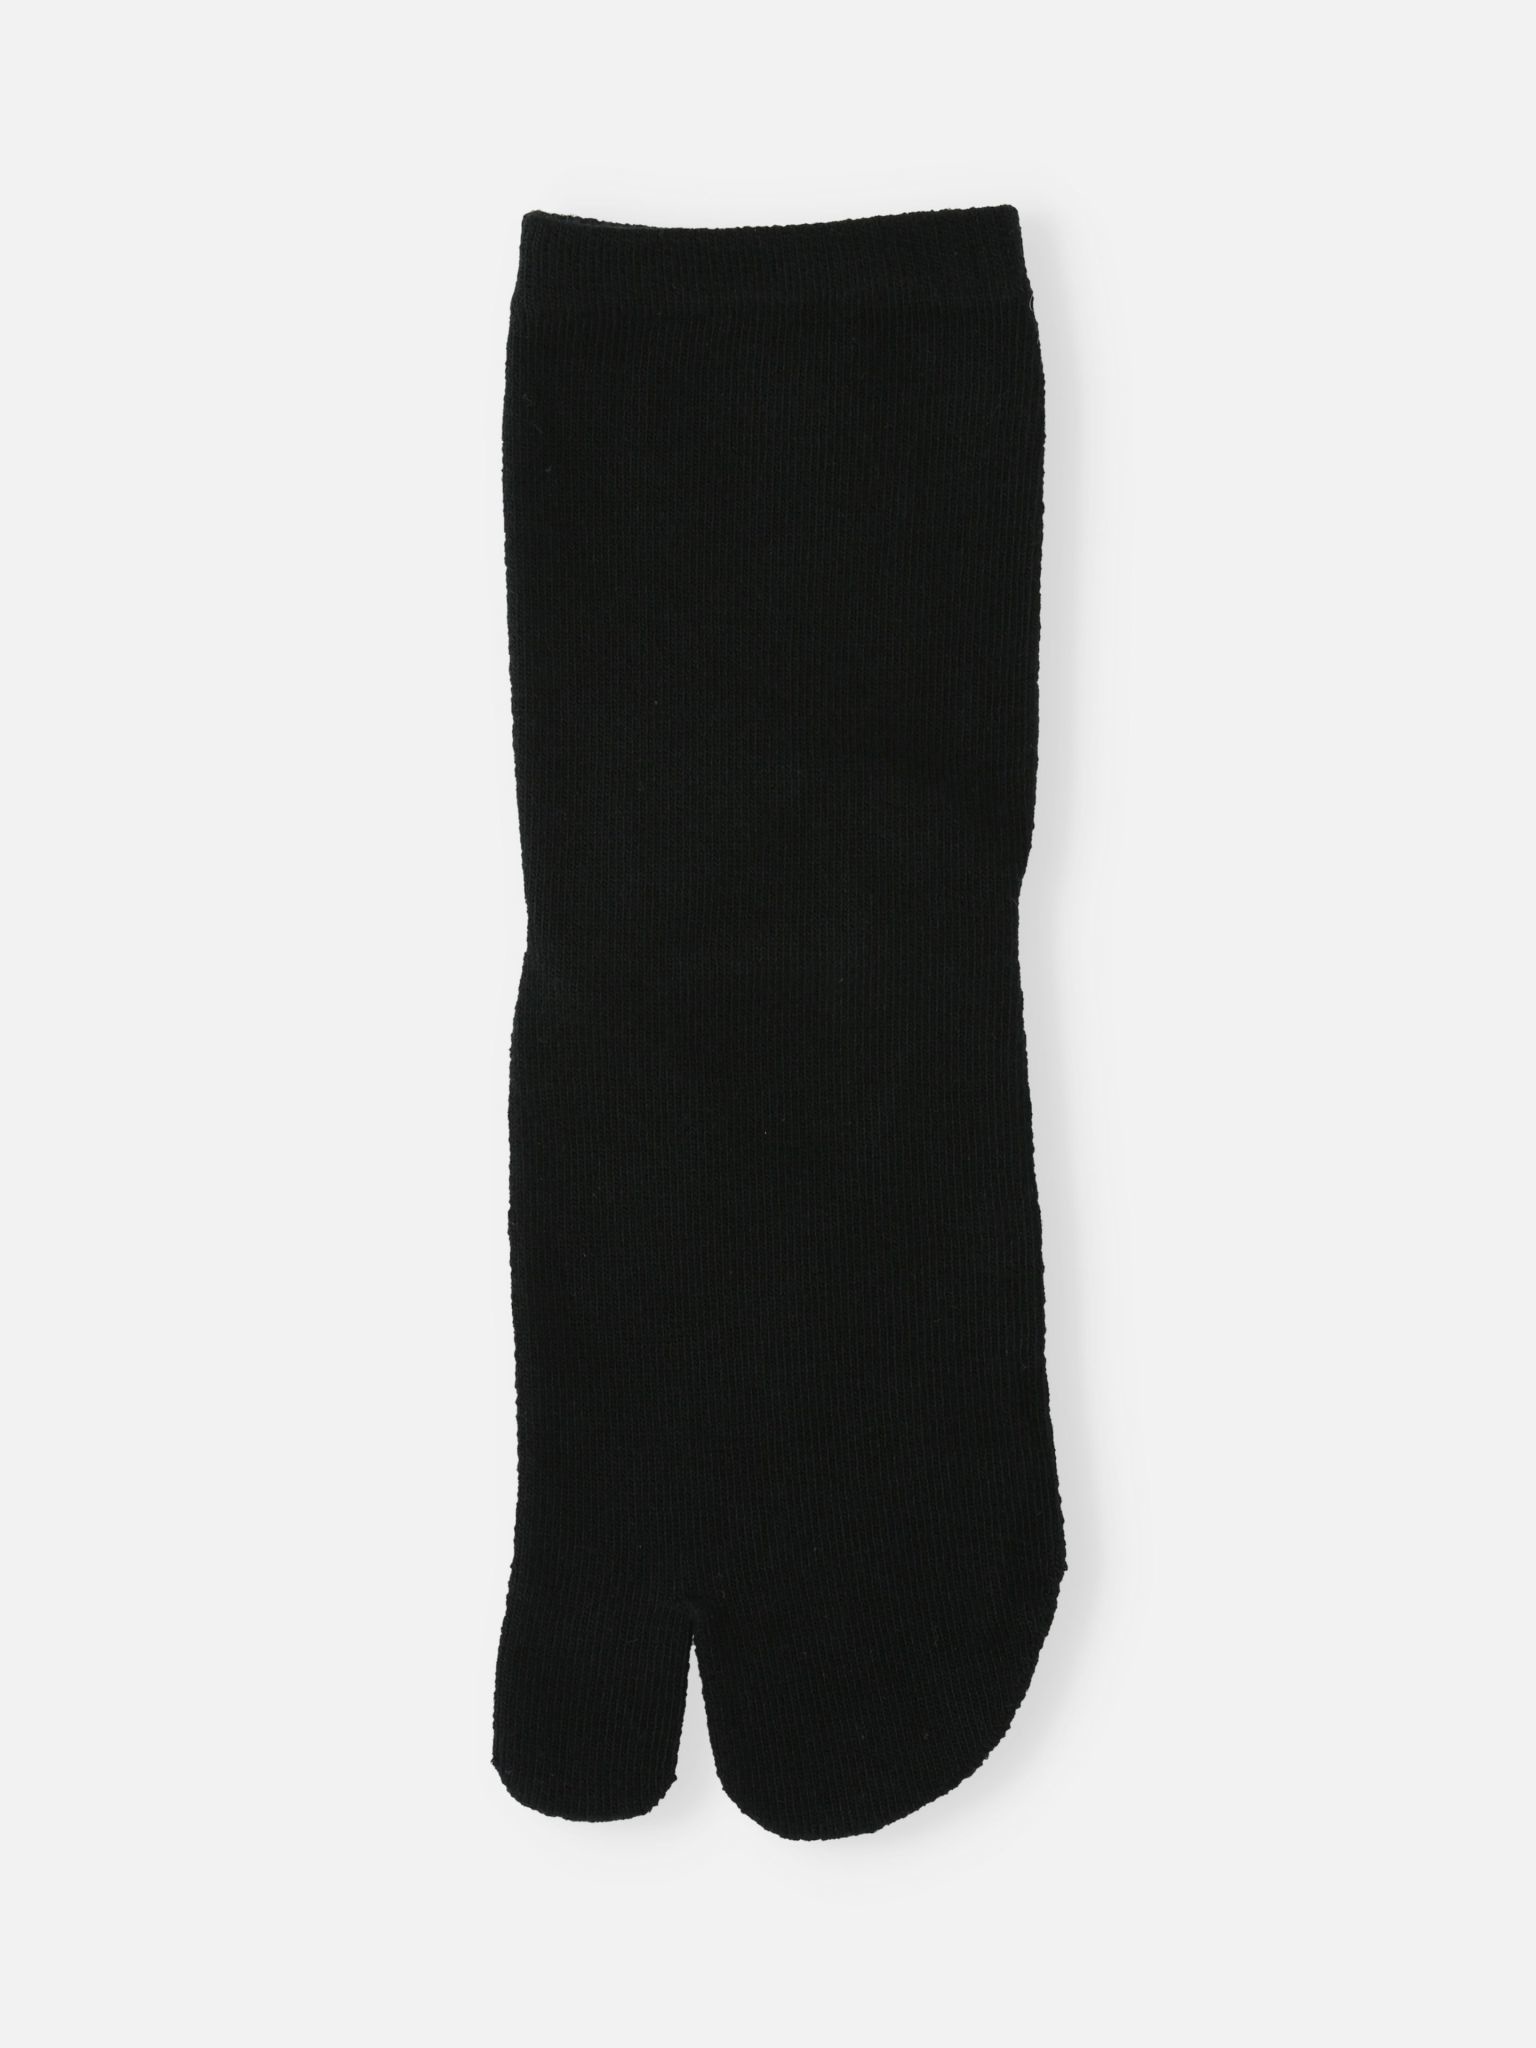 Calcetines mujer otoño invierno algodón calcetines coreanos INS pila  calcetines Zhivalor CPB-YY512-1